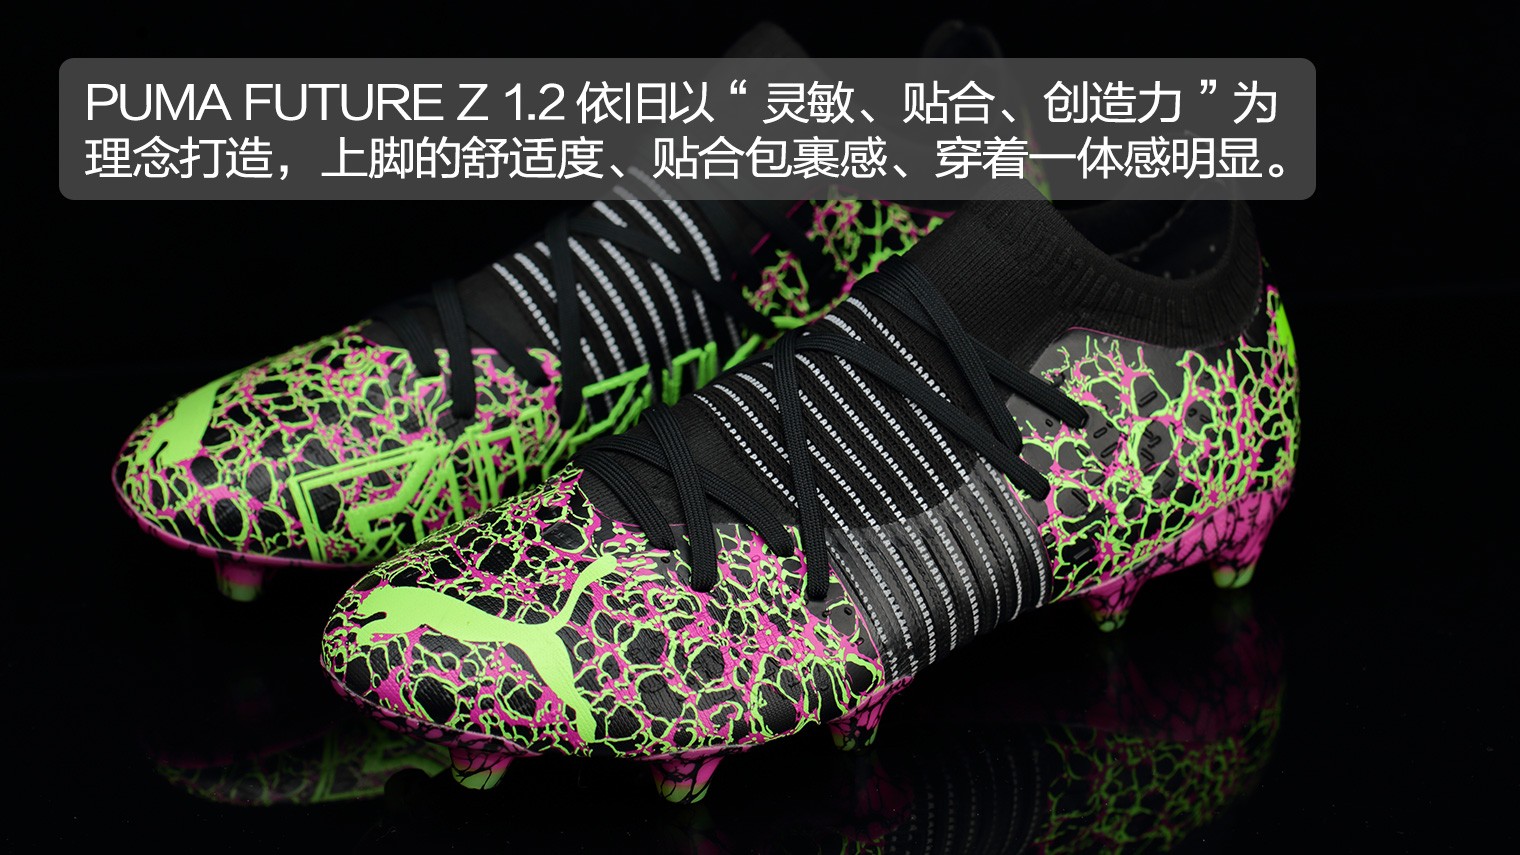 足球鞋什么牌子好？哪种足球鞋好？PUMA FUTURE Z 1.2 FG/AG“Origin”足球鞋